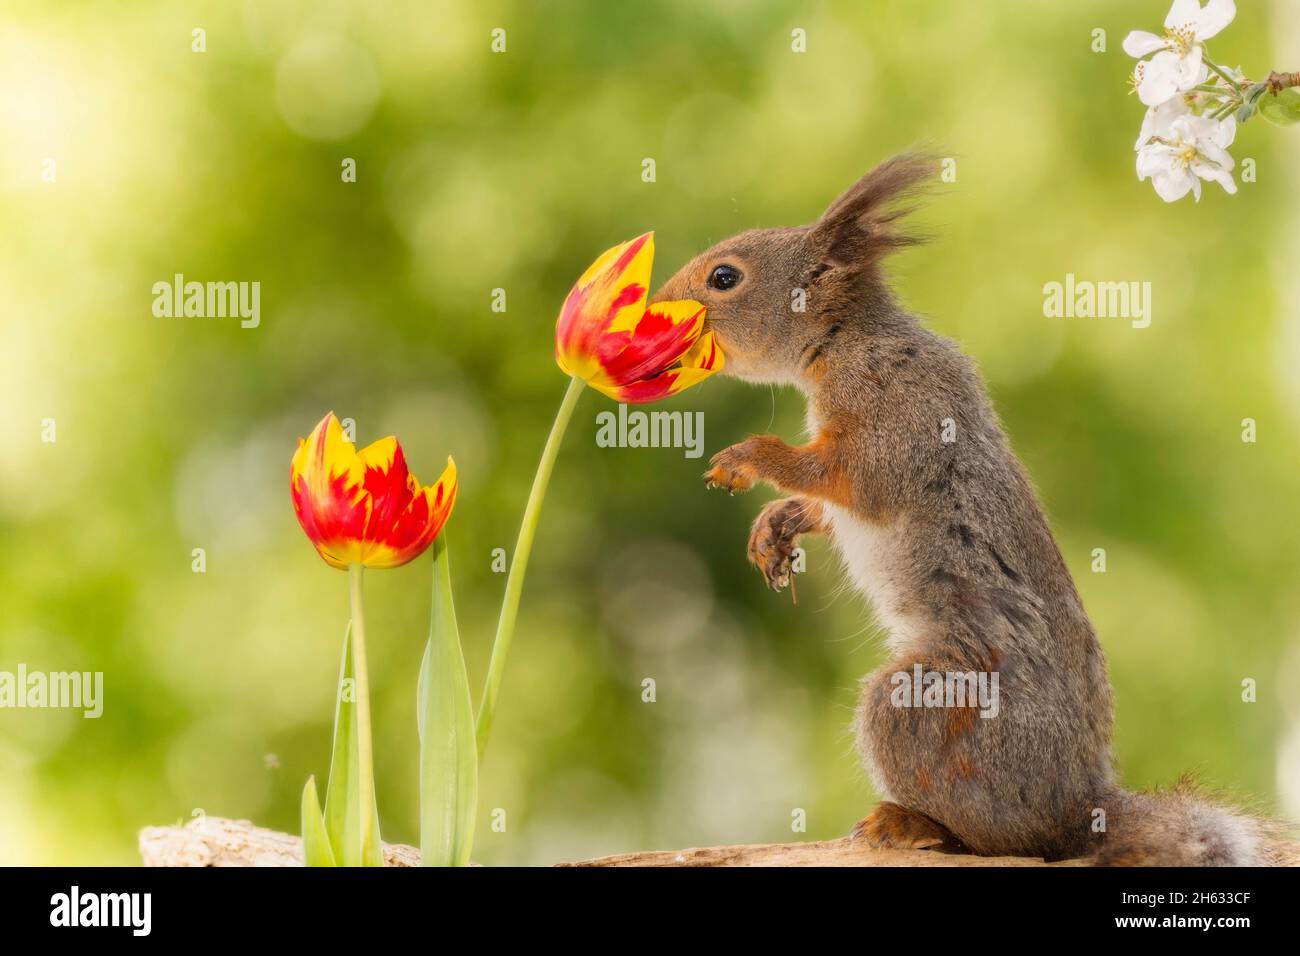 Nahaufnahme von roten, nach Eichhörnchen riechenden Tulpenblüten Stockfoto